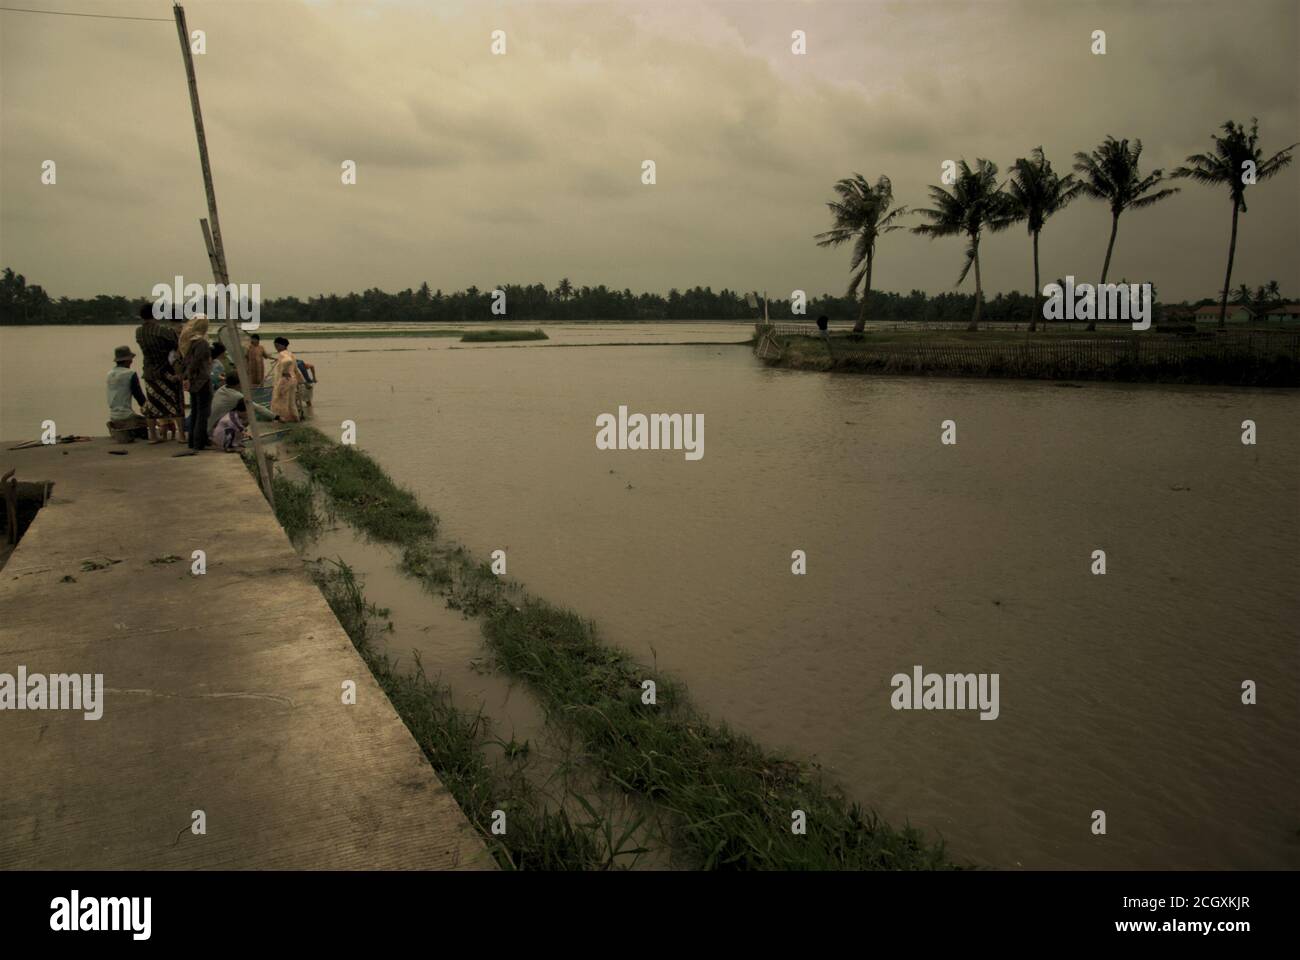 Les agriculteurs se regroupant sur un chemin de randonnée concret pour pêcher, comme les pluies torrentielles pendant la saison des pluies, ont laissé certaines zones agricoles inondées à Karawang regency, province de Java Ouest, Indonésie. Banque D'Images